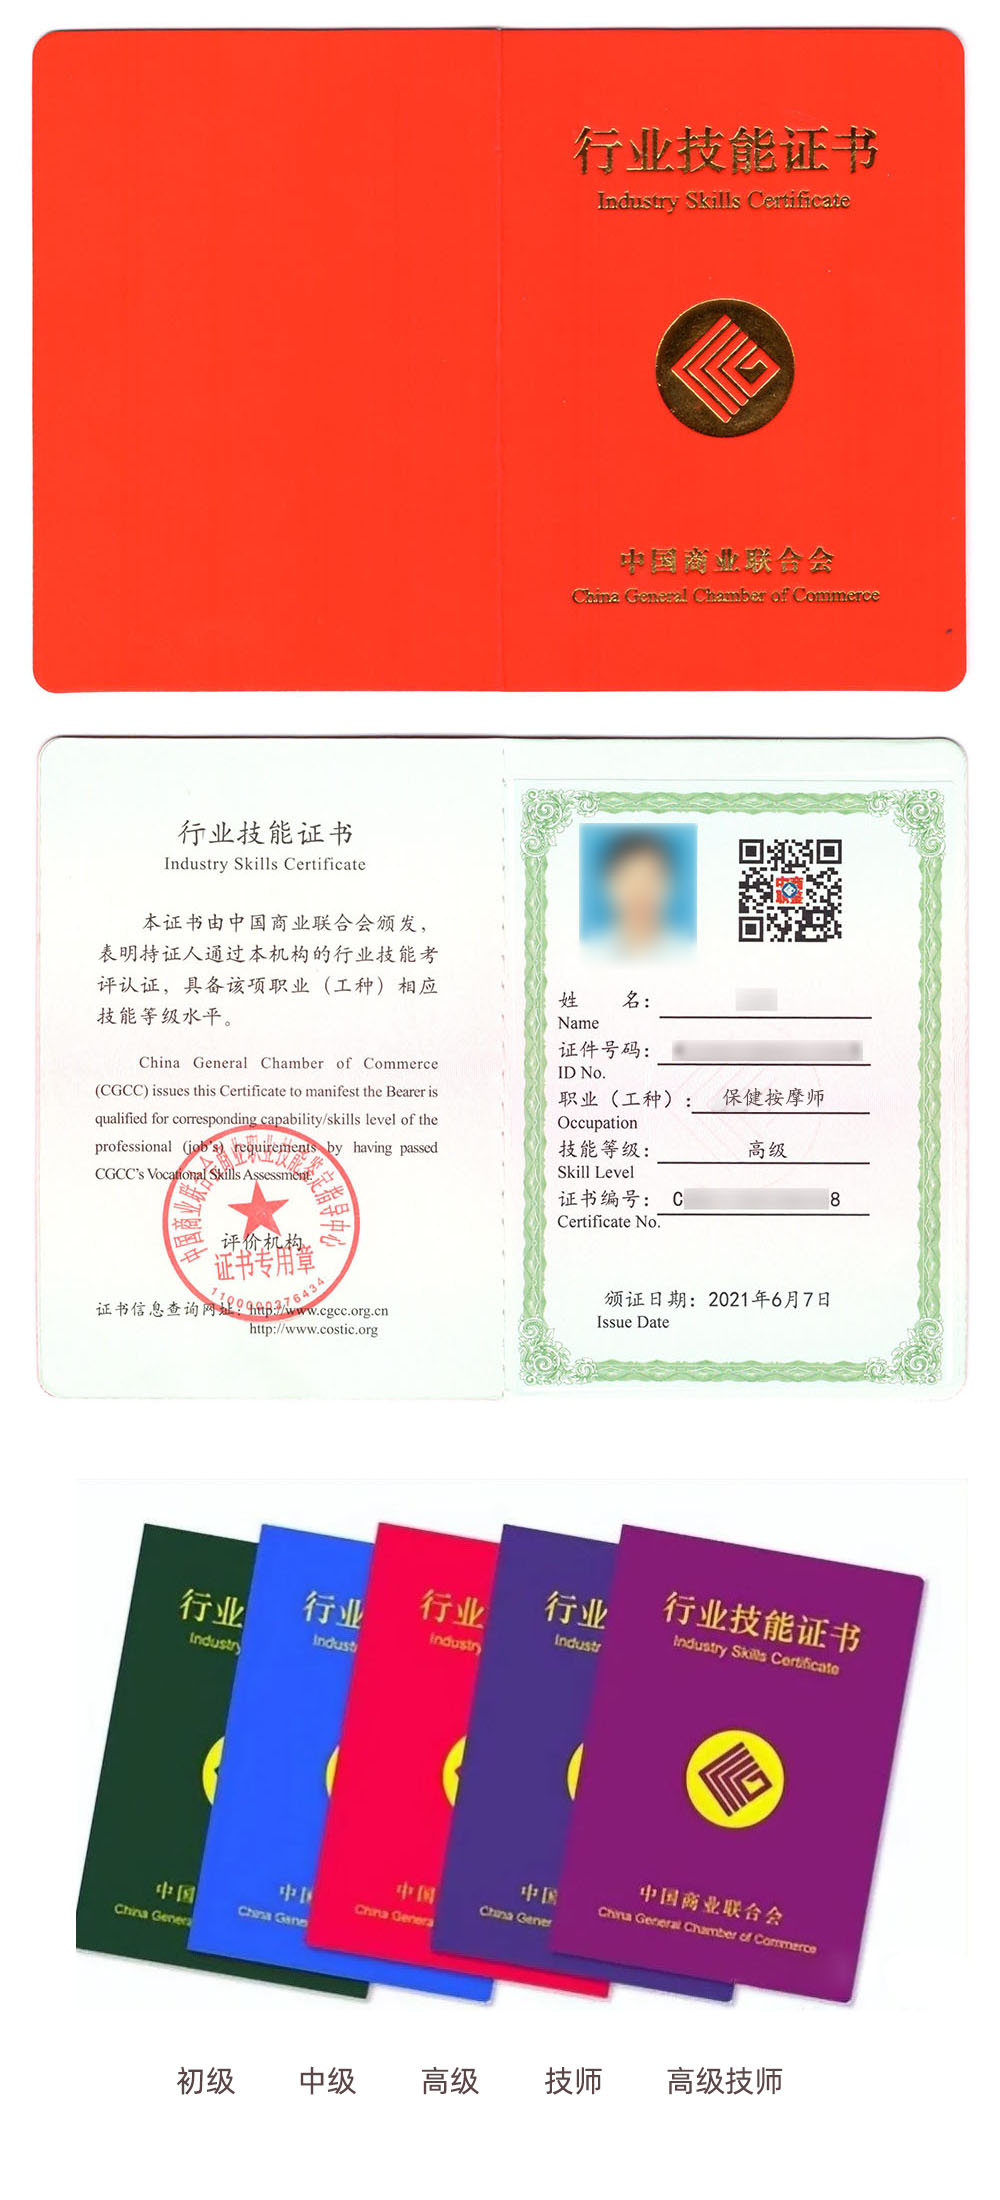 中国商业联合会商业职业技能鉴定指导中心 行业技能证书 保健按摩师证书样本